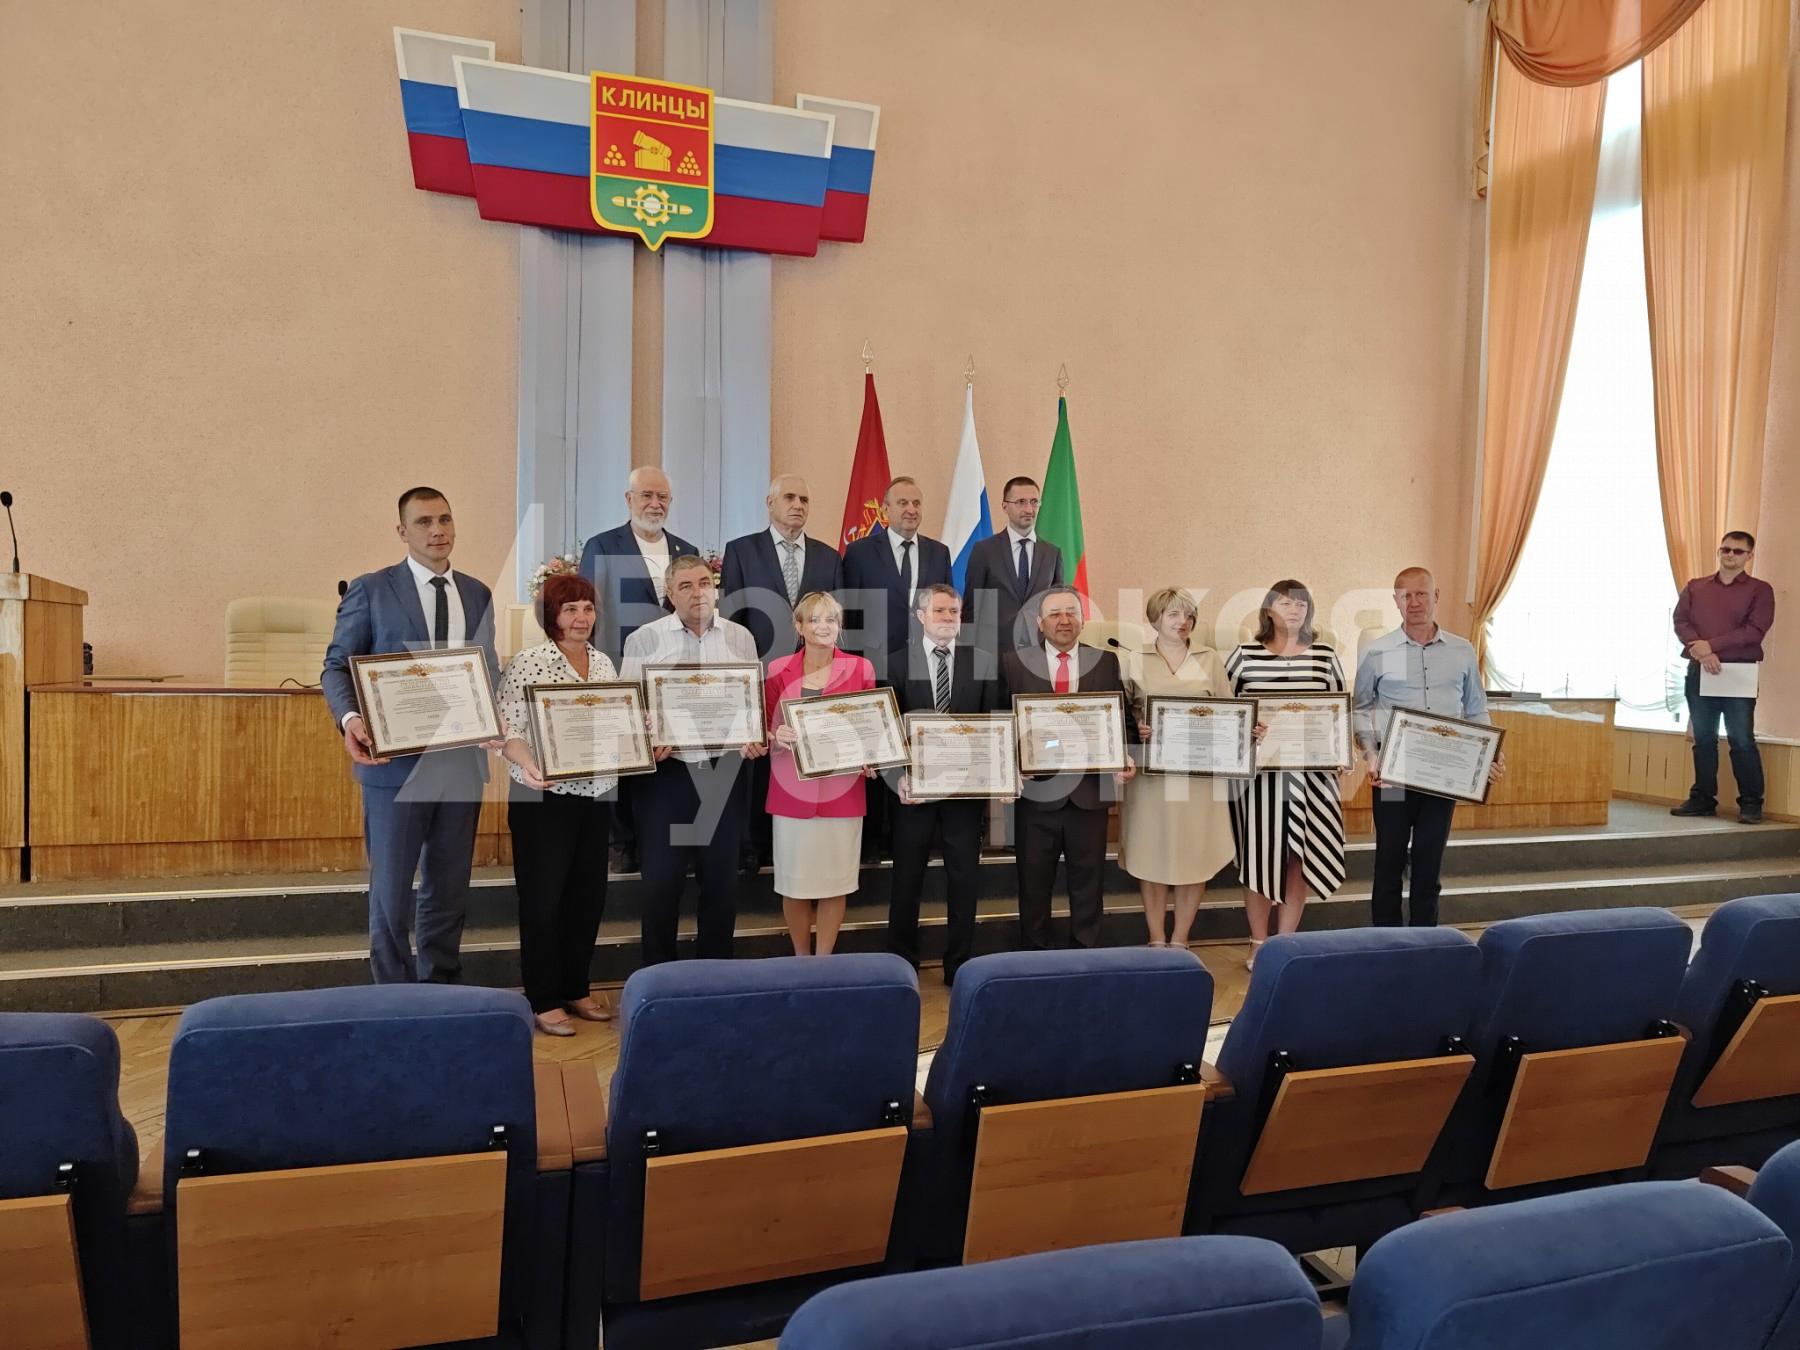 Девять сельских поселений Клинцовского района обрели собственные флаги и гербы